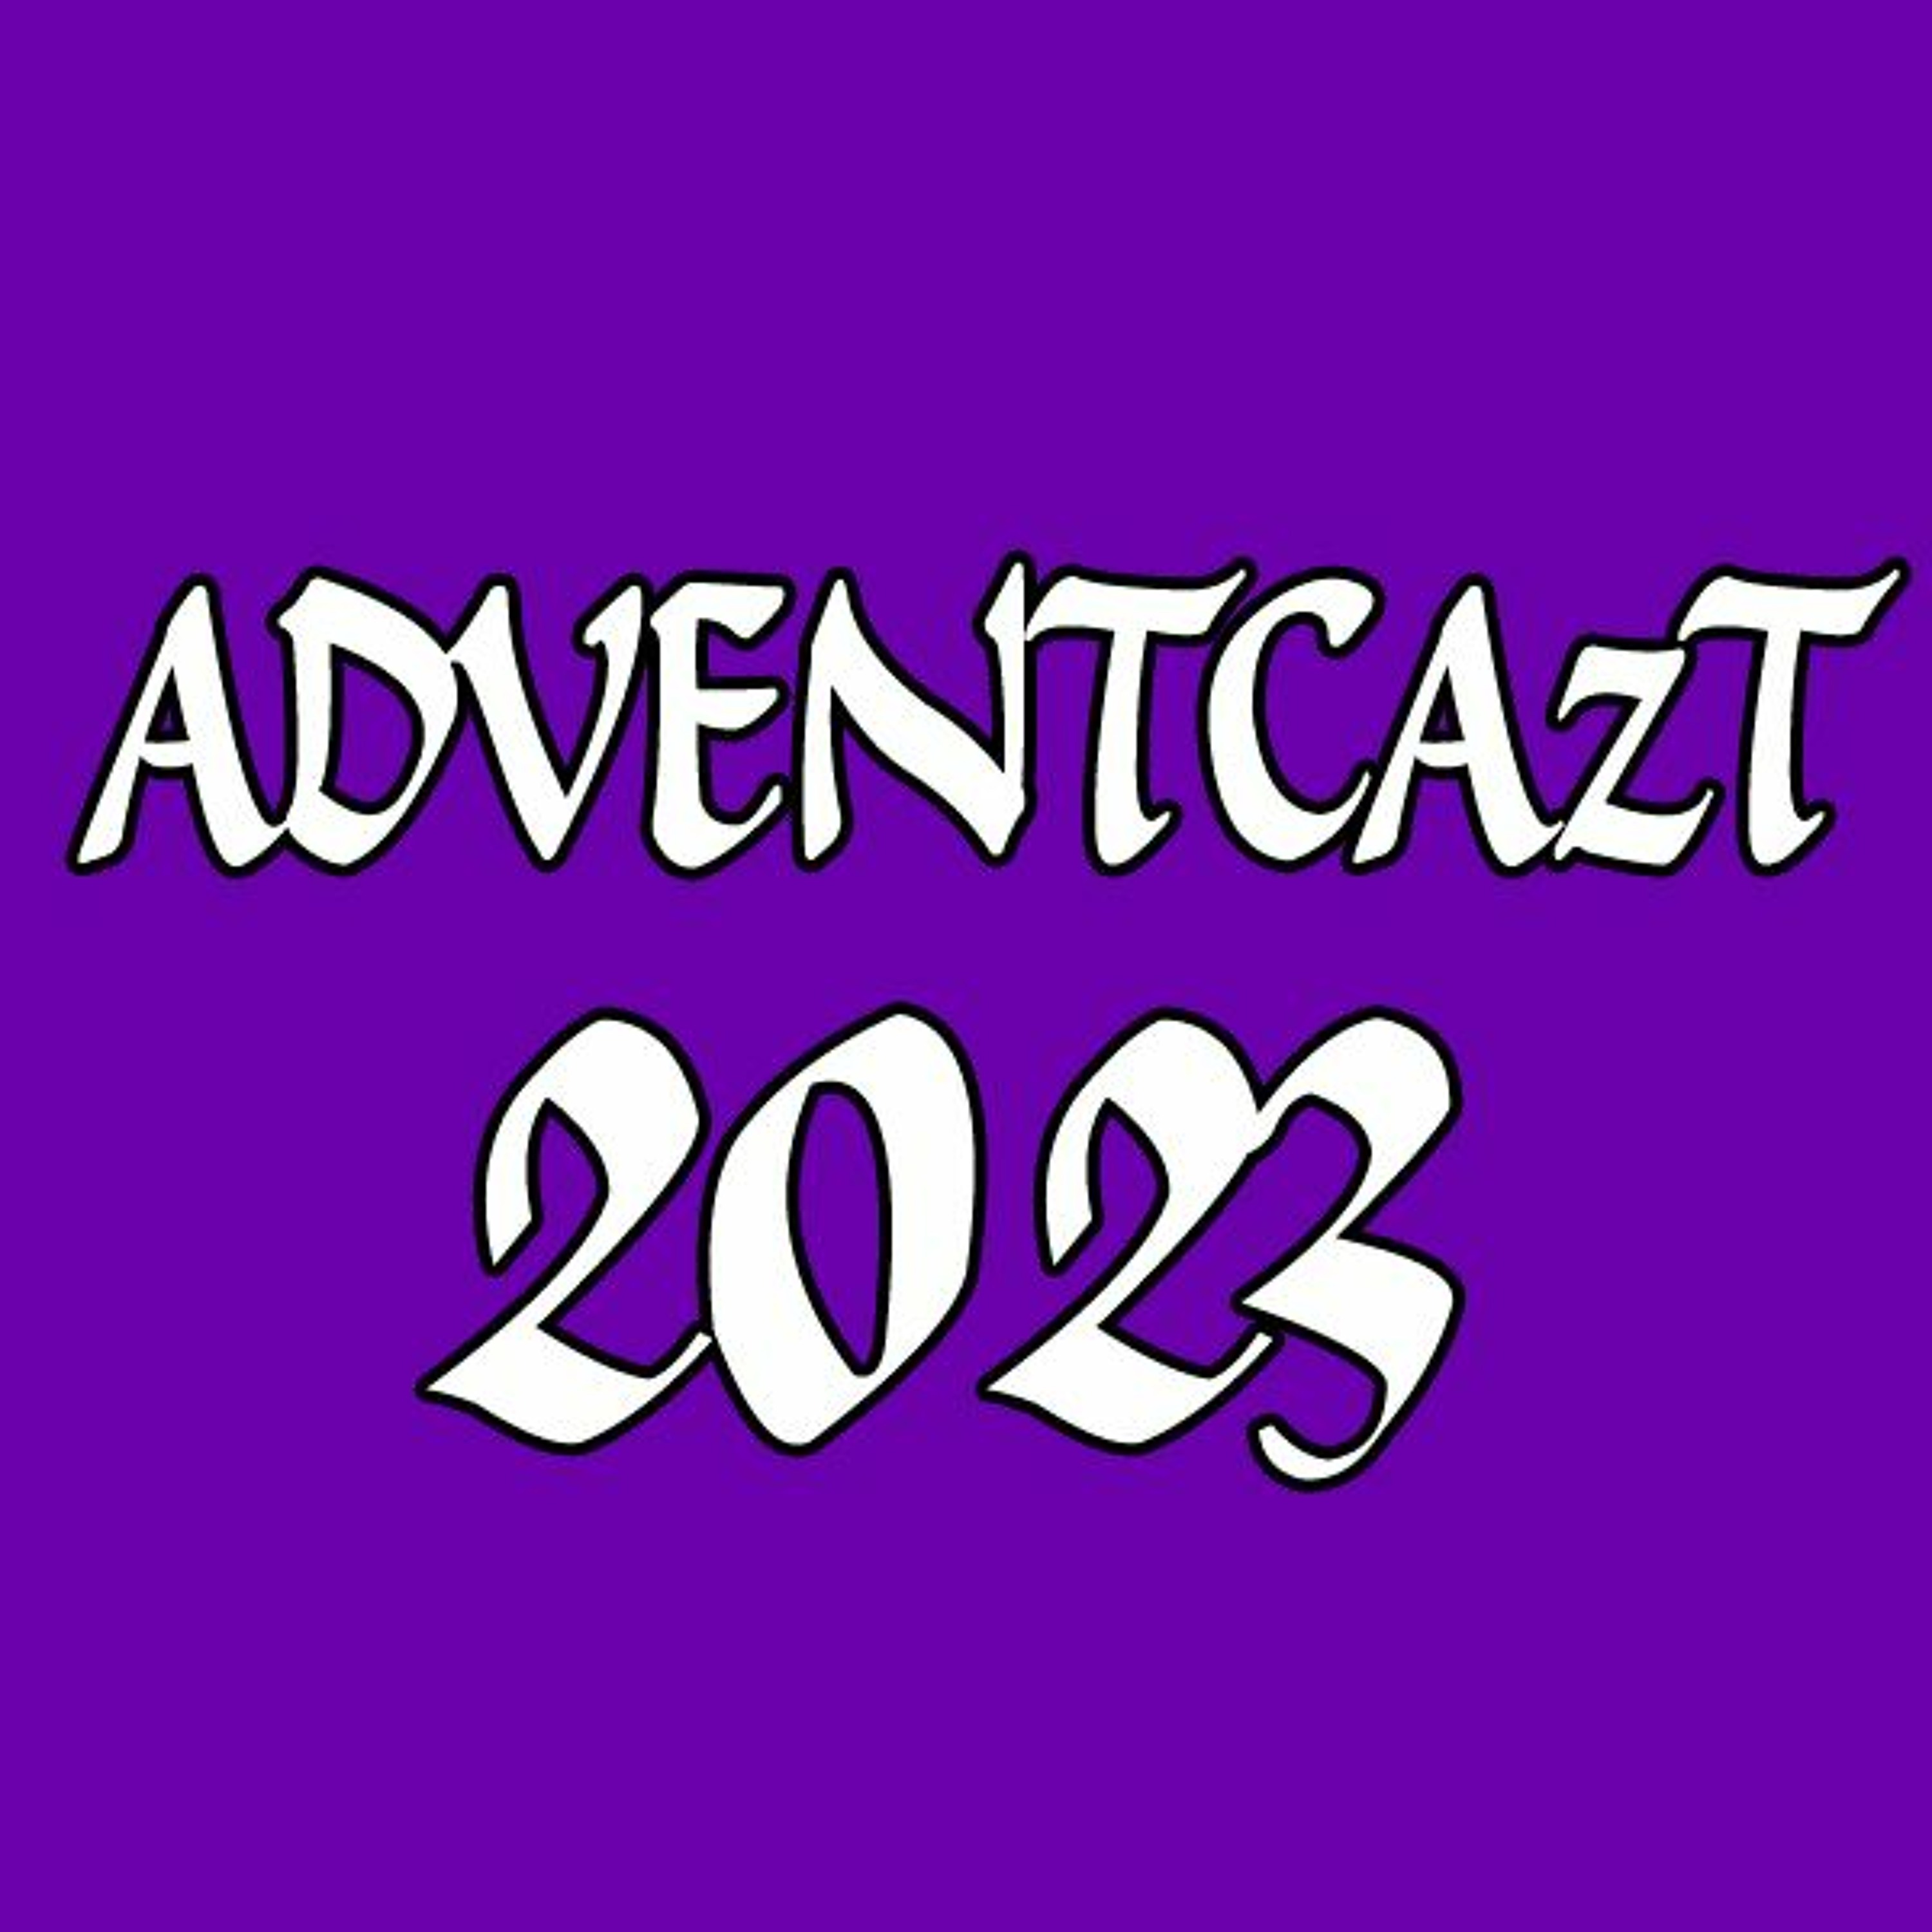 ADVENTCAzT 2023 – 19 – Thursday 3rd Week of Advent: Veni!